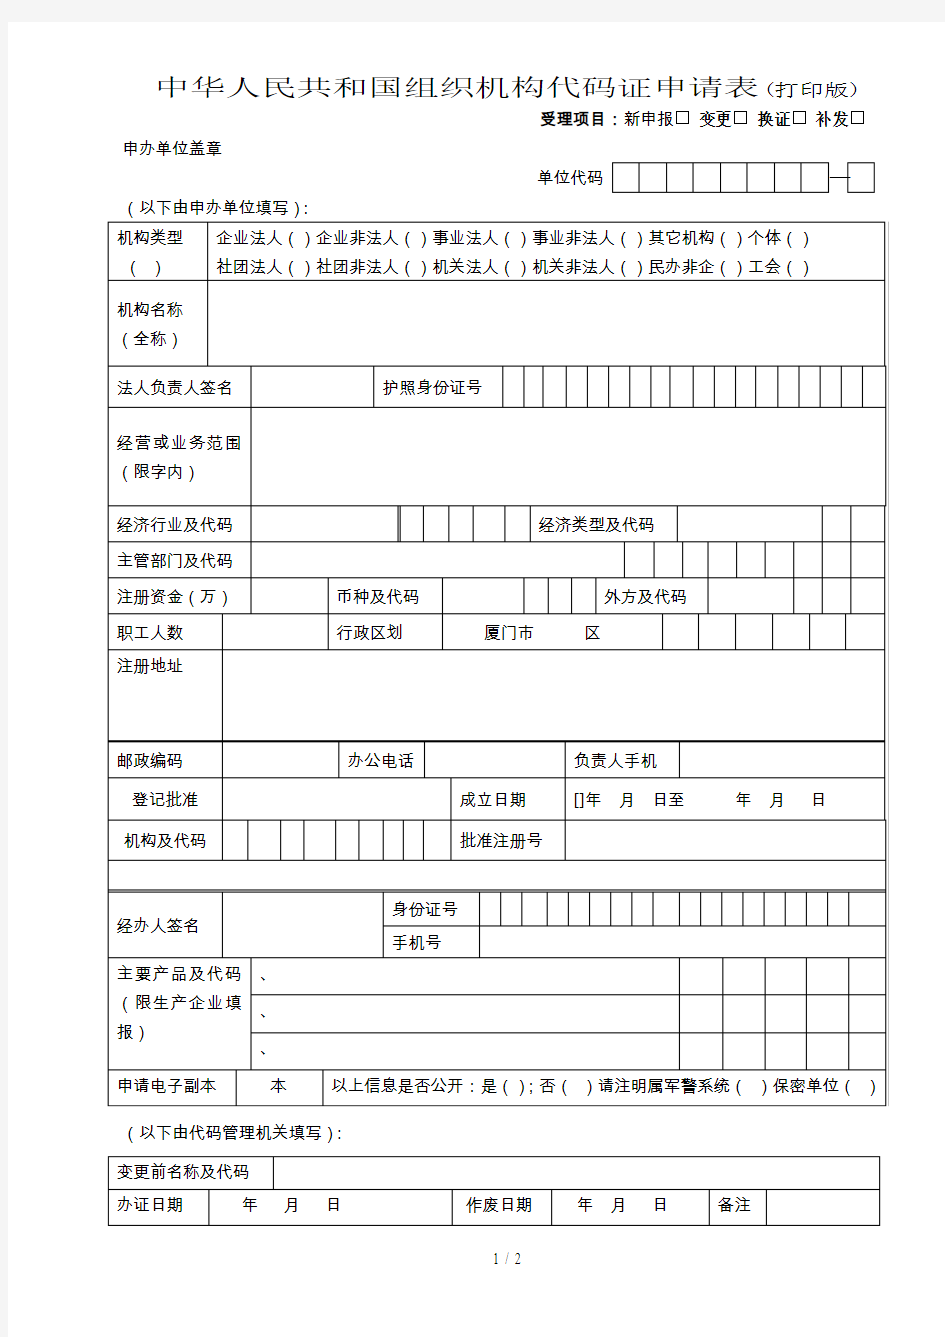 中华人民共和国组织机构代码证申请表(打印版)